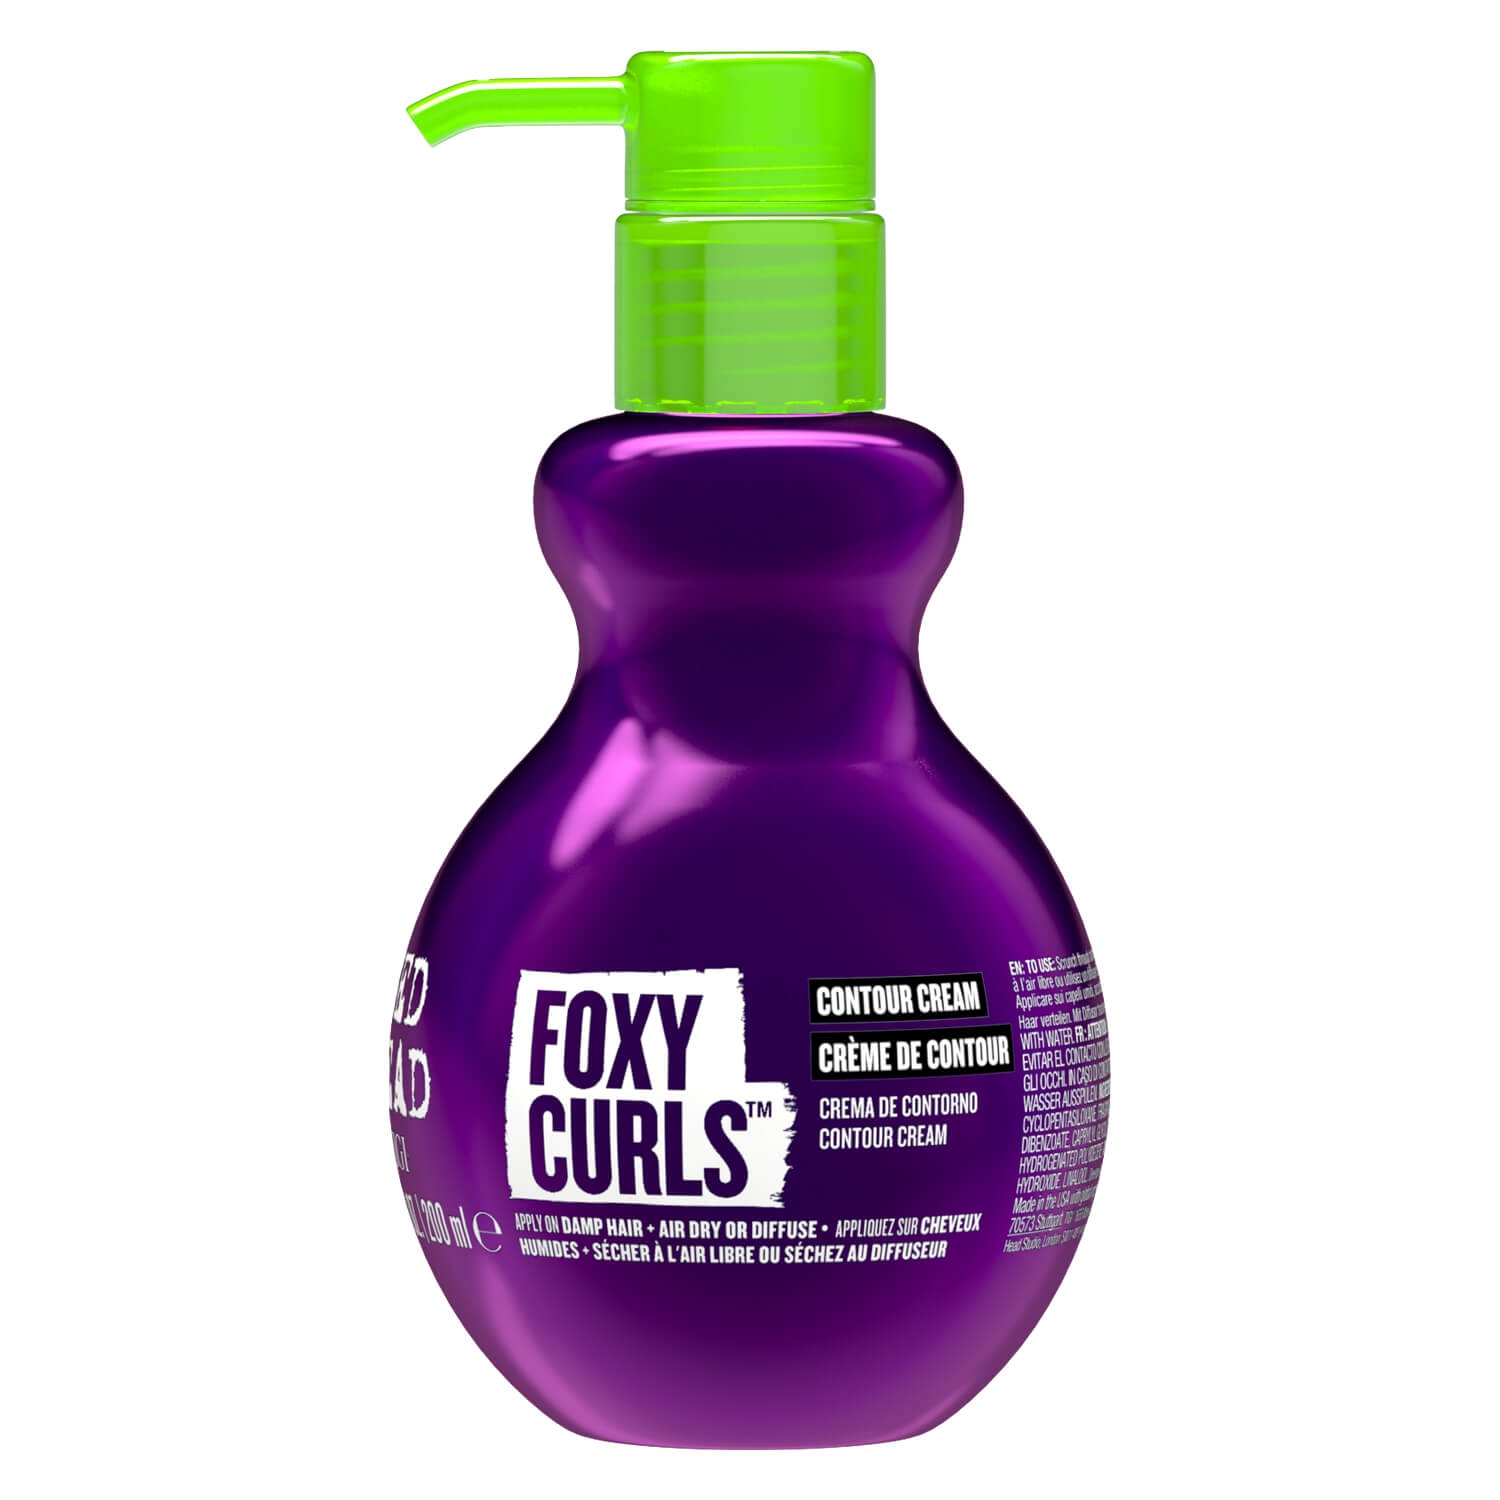 Produktbild von Bed Head Foxy Curls - Contour Styling Cream